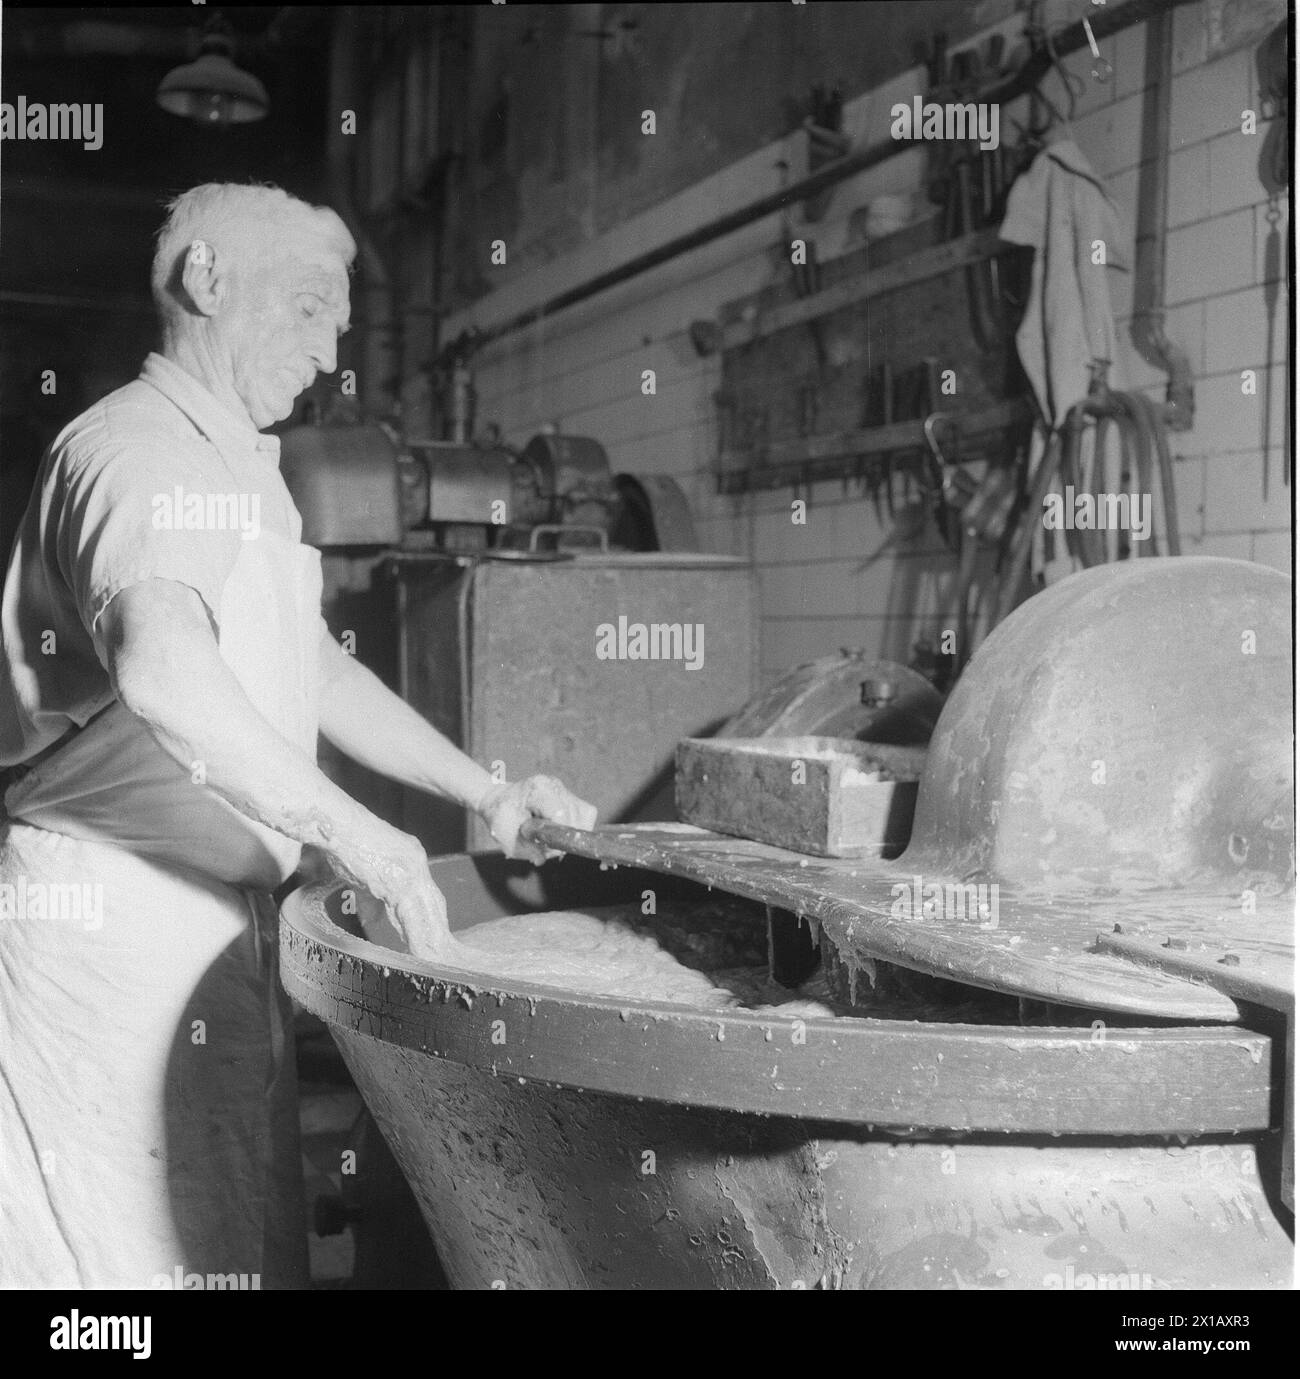 Butcher's, azienda del grande macellaio Joseph Ziegler a Vienna 4, via principale Wiedner 76, 1947 - 19470101 PD1102 - Rechteinfo: Rights Managed (RM) Foto Stock